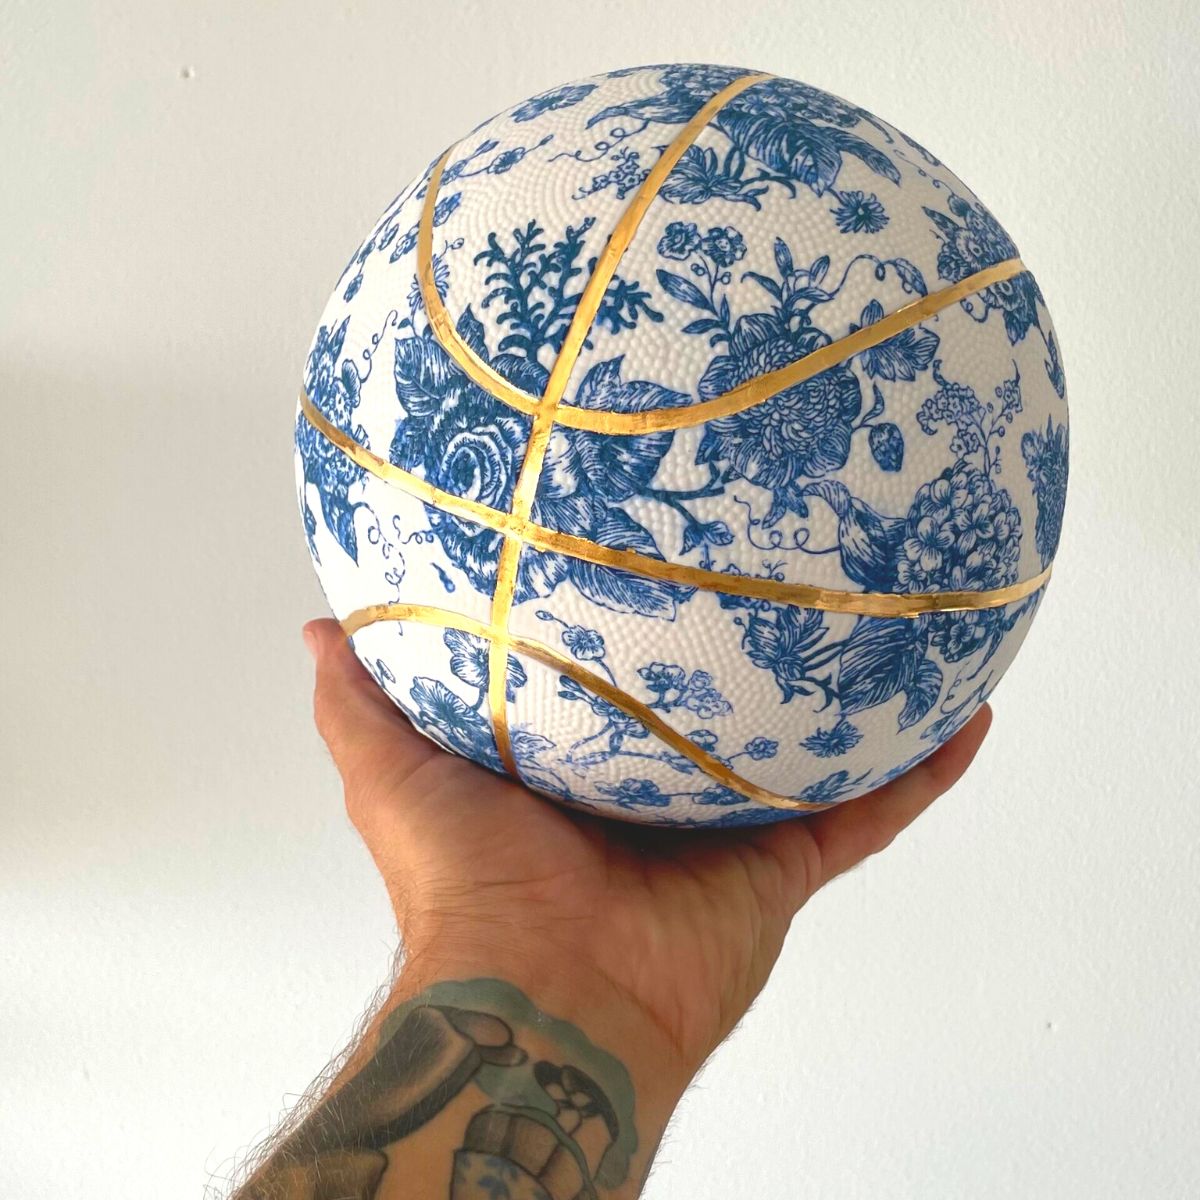 Basketball porcelain object by Brock DeBroer